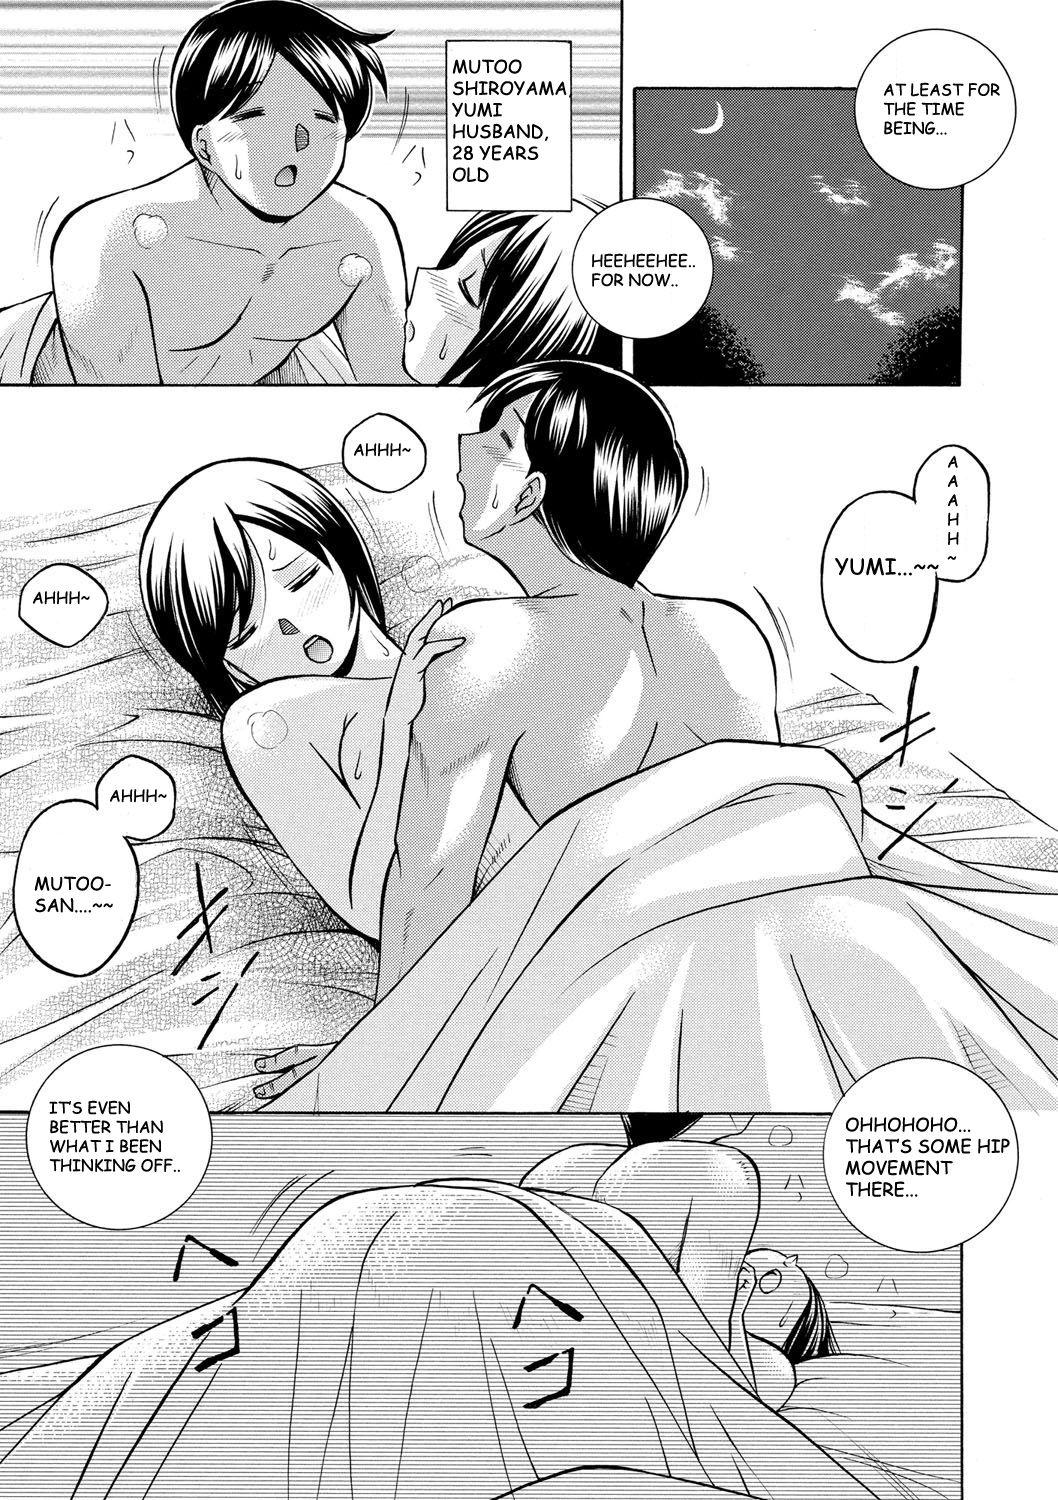 Erotica Gichichi Blowjob - Page 8